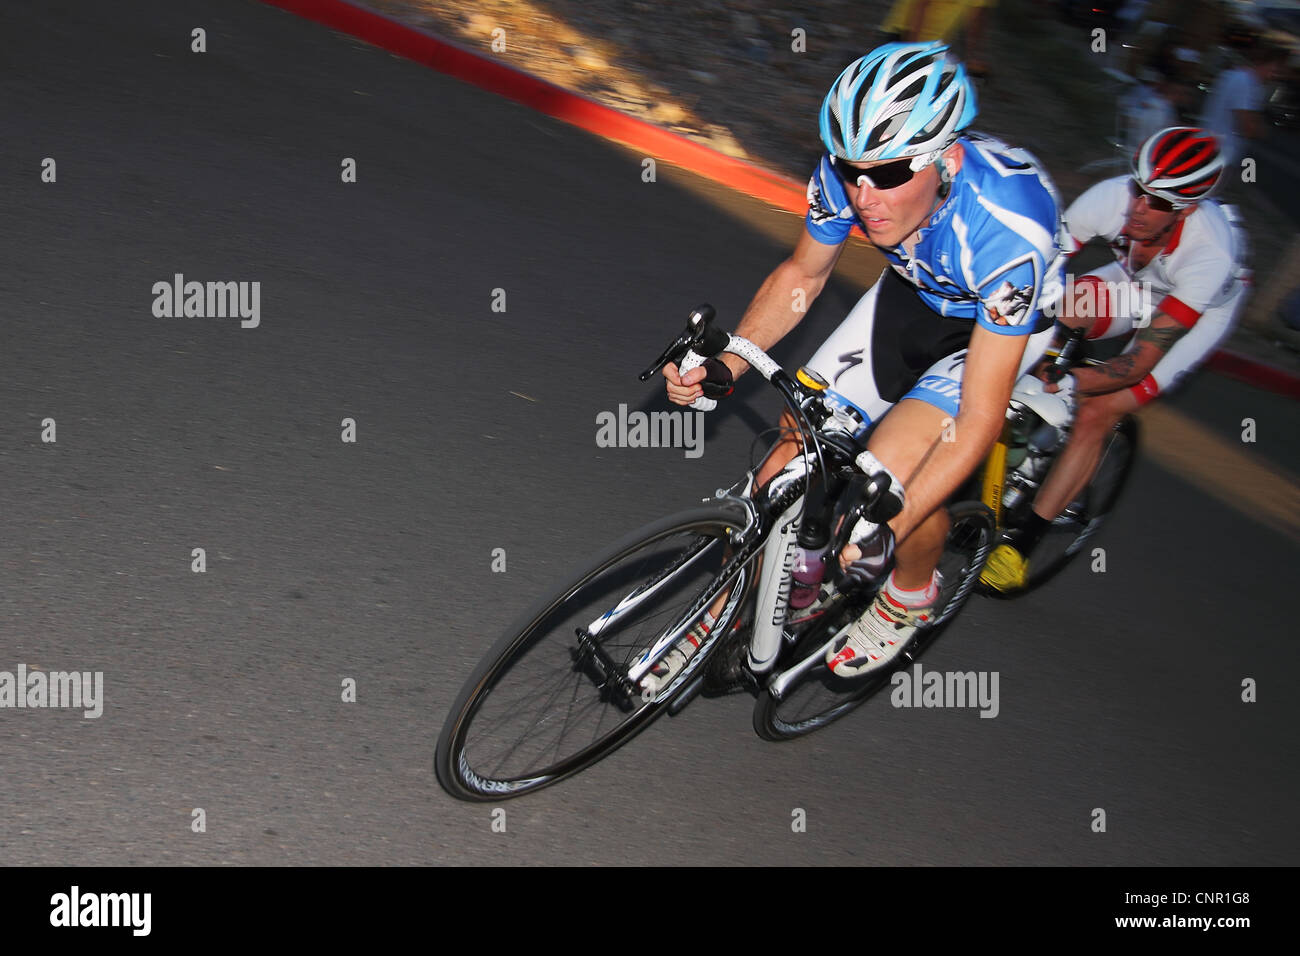 SCOTTSDALE, AZ - 2 Oktober: Radfahrer konkurrieren in Scottsdale Cycling Festival Criterium, einem Hochgeschwindigkeits-Rundkurs auf ein 1-kilo Stockfoto